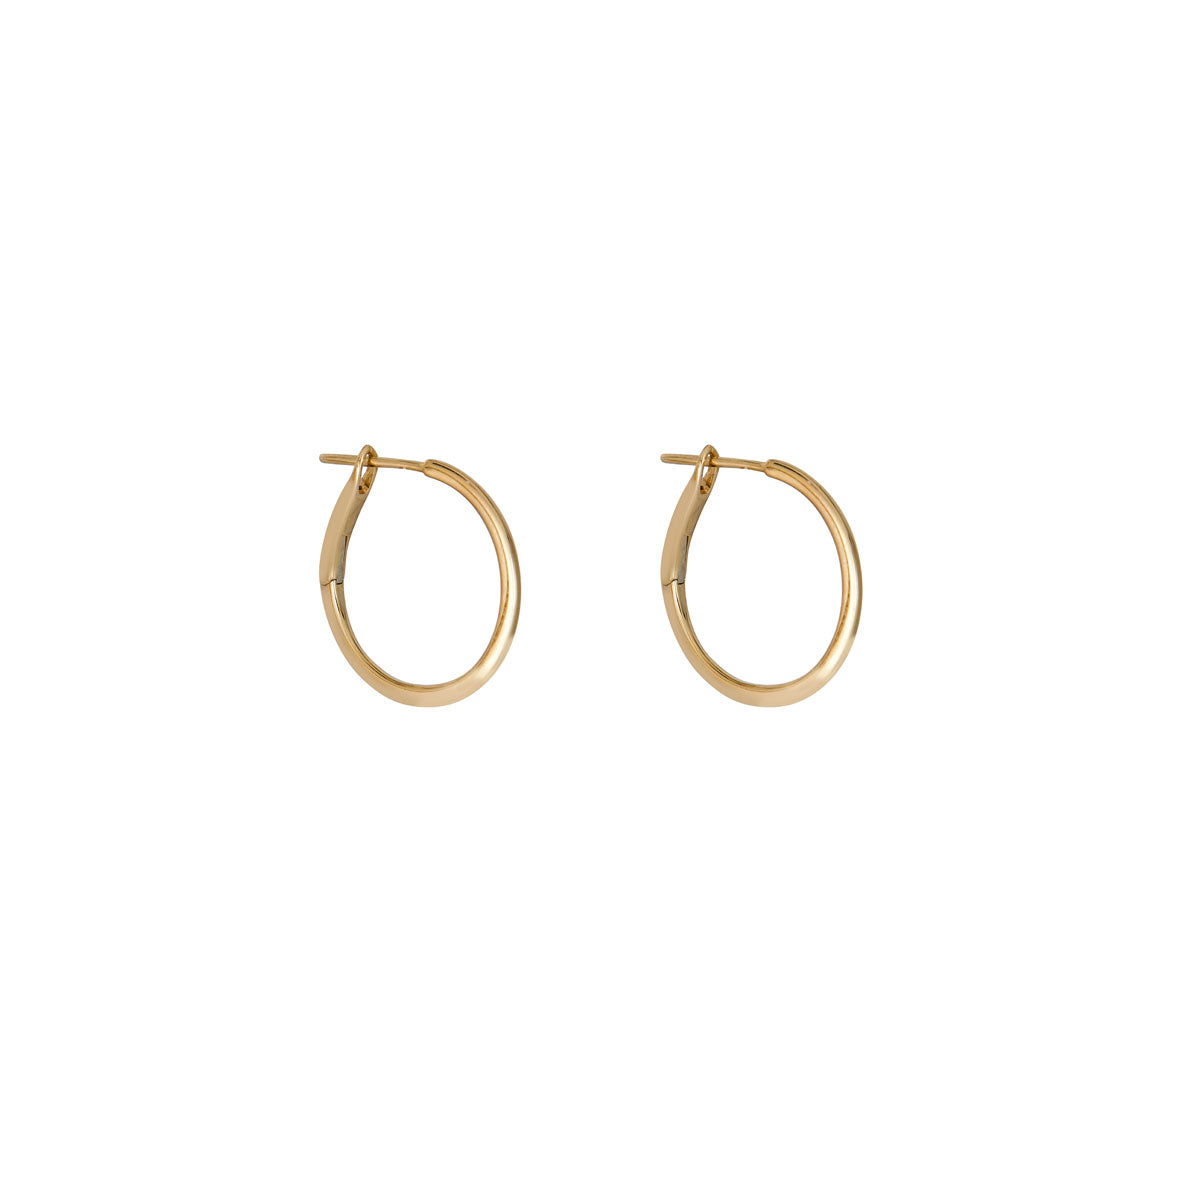 Gold Hoop Earrings Real Gold 14k Earrings Large Hoop -  Sweden